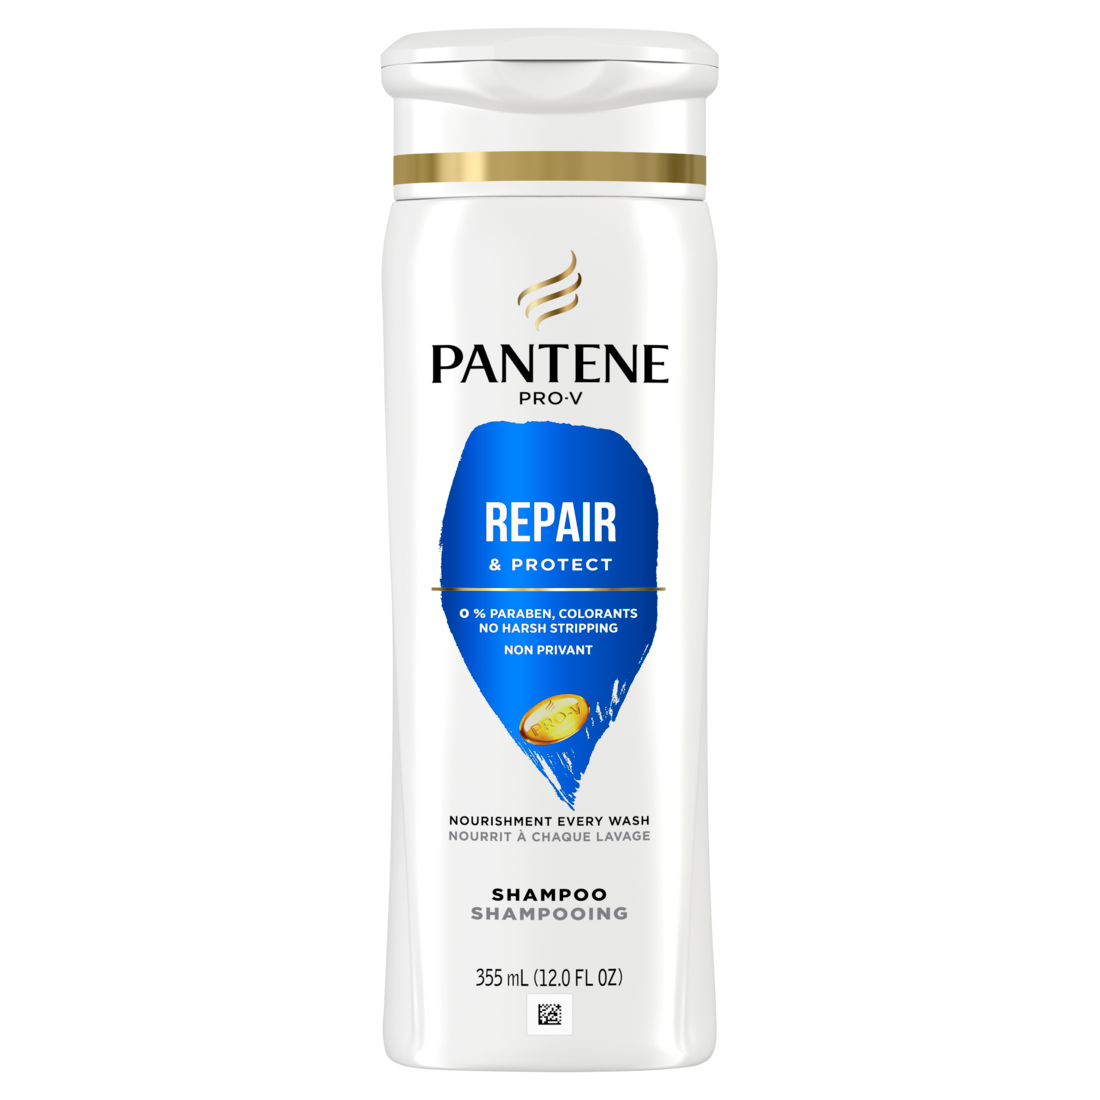 PANTENE PRO-V Repair & Protect Shampoo -12oz/6pk